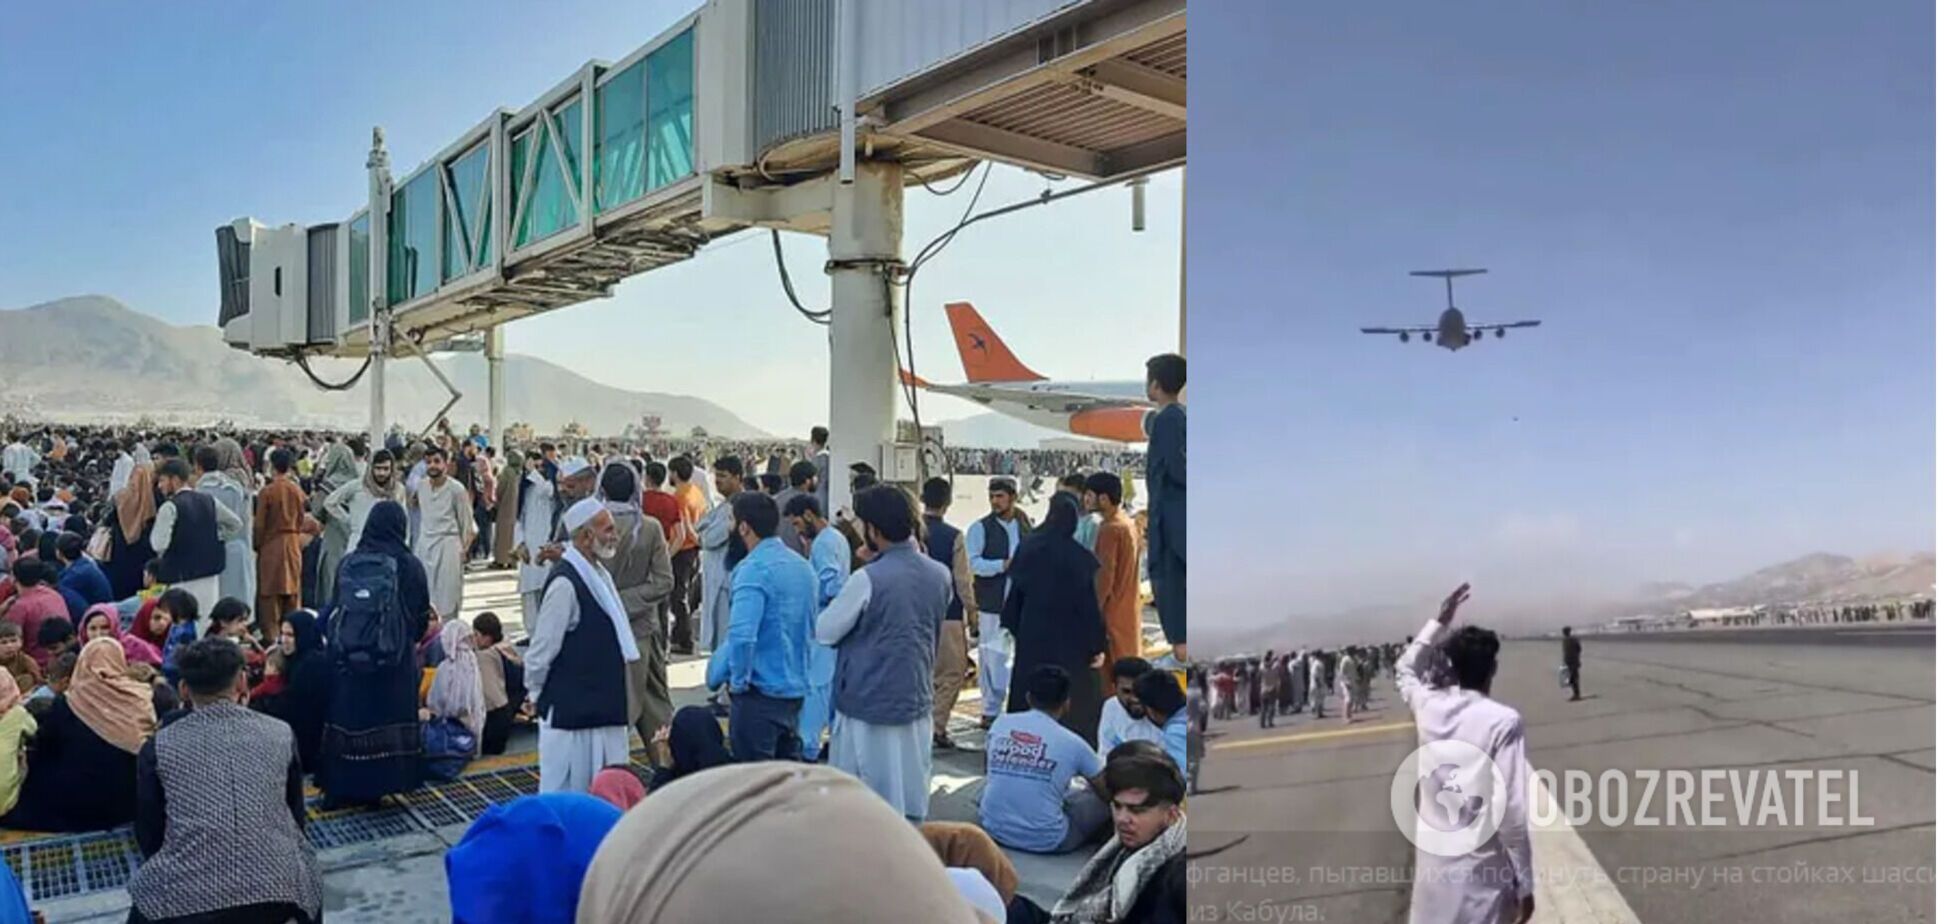 В аэропорту Кабула люди цеплялись за шасси самолетов, чтобы улететь из страны, есть погибшие. Видео 18+